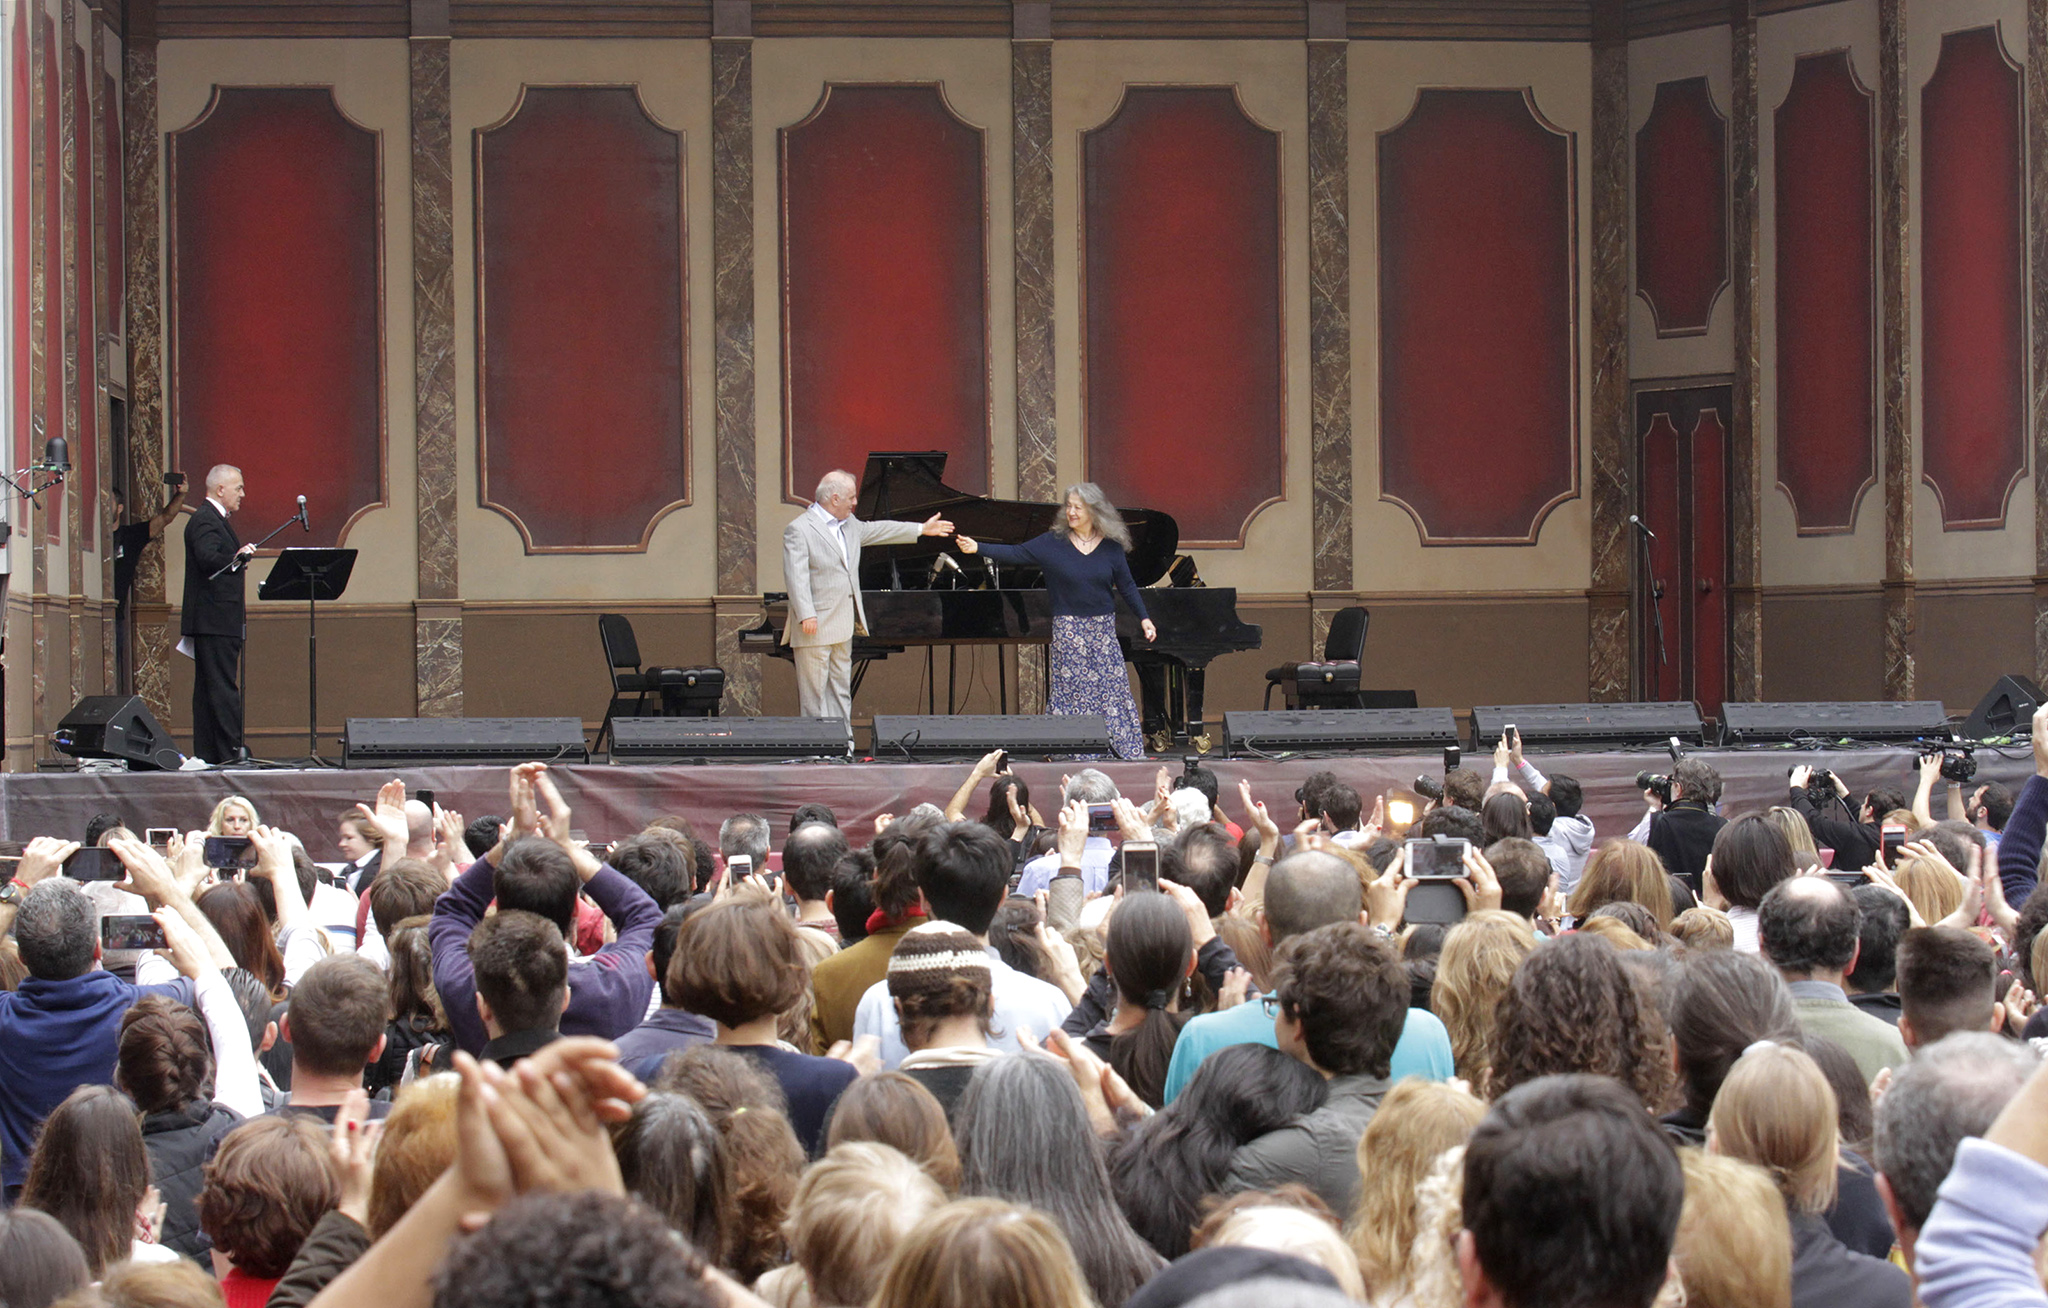 Más de diez mil personas disfrutaron del concierto gratuito de Barenboim y Argerich